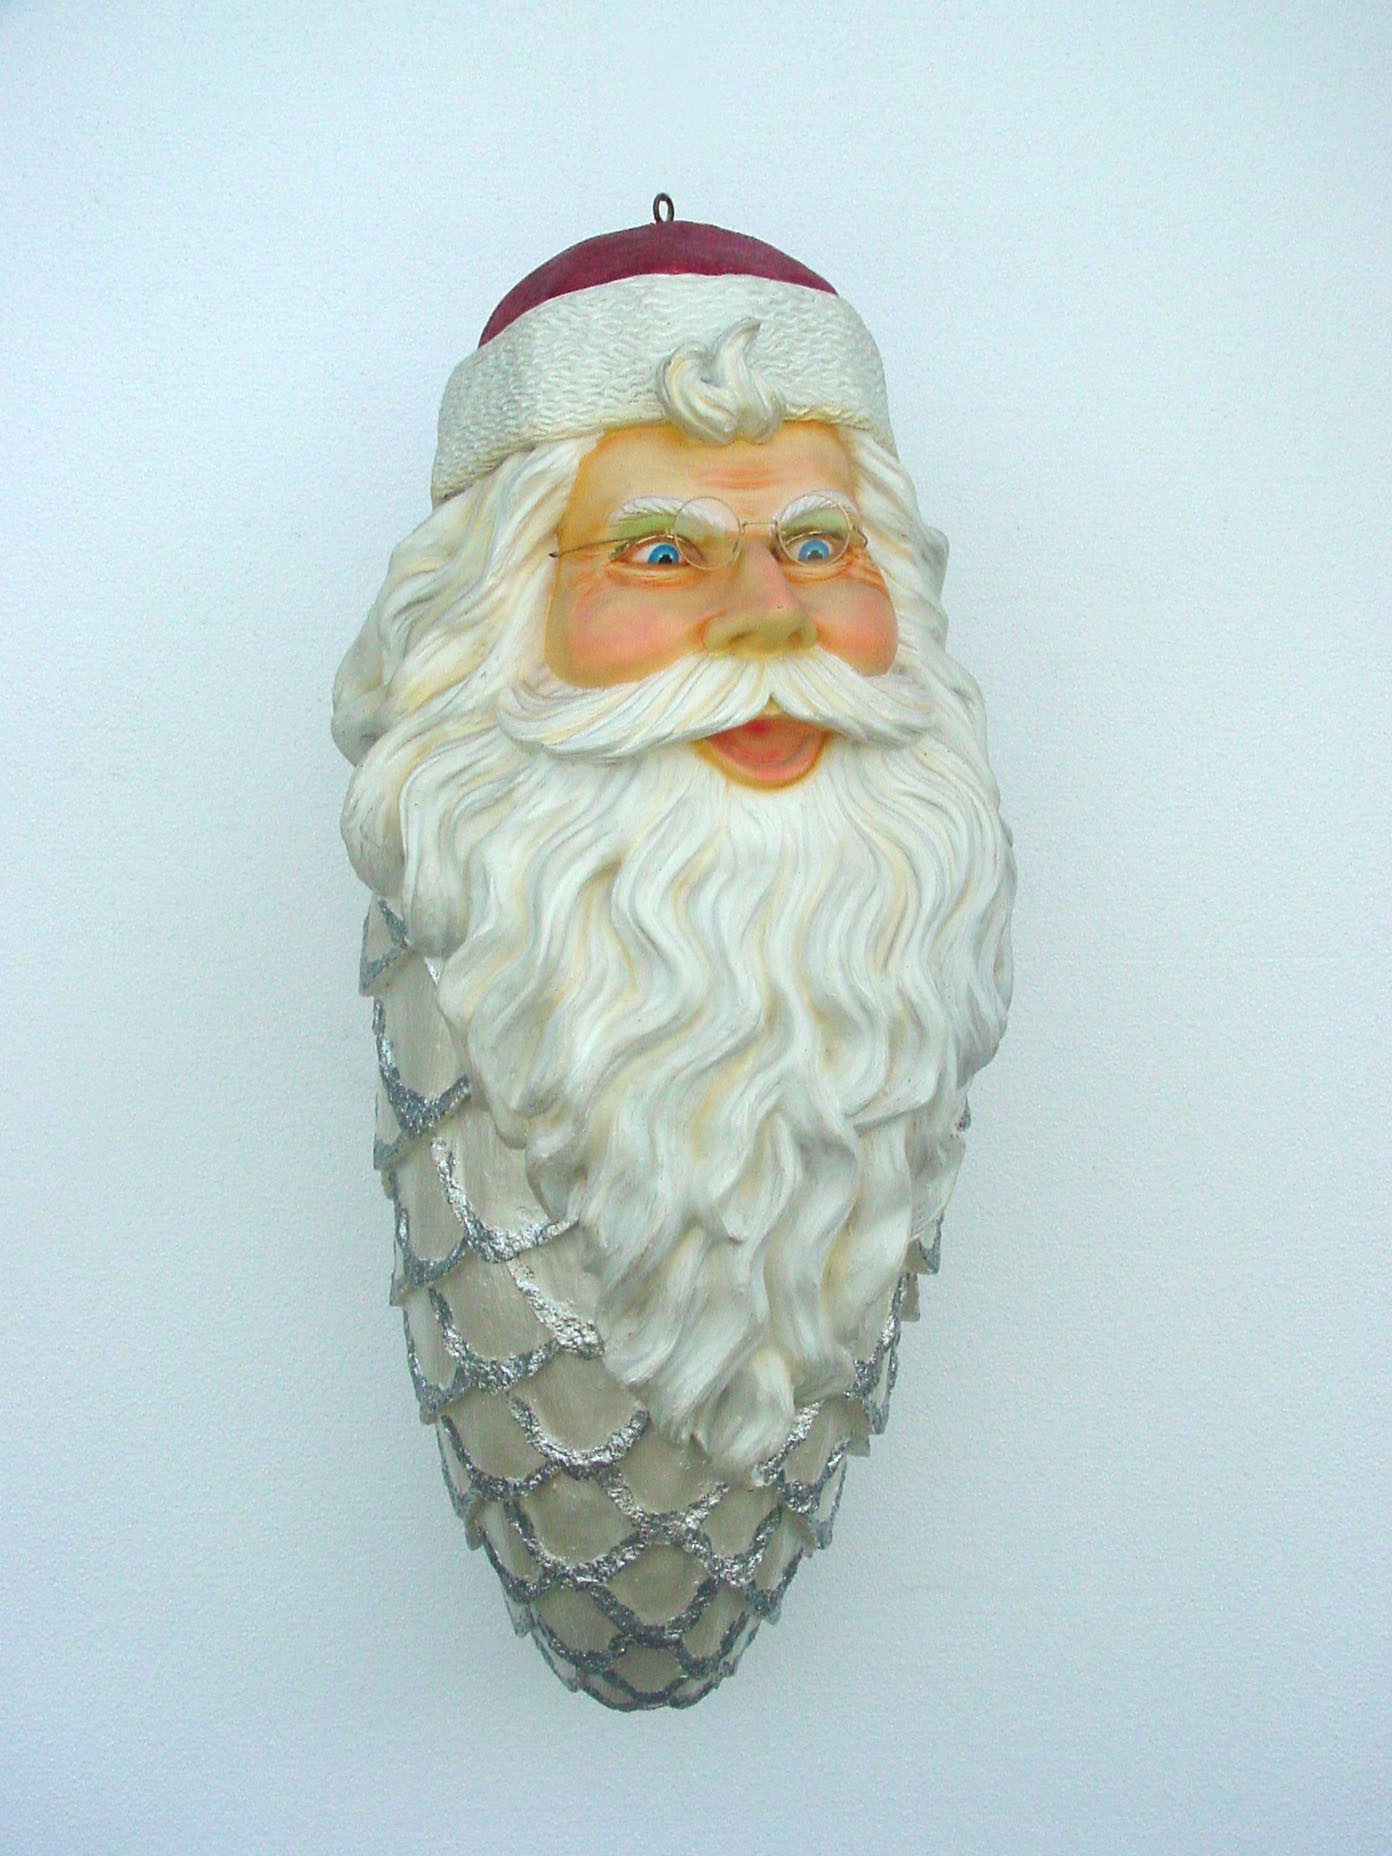 großes Weihnachtsmanngesicht mit Bart als Weihnachtszapfen